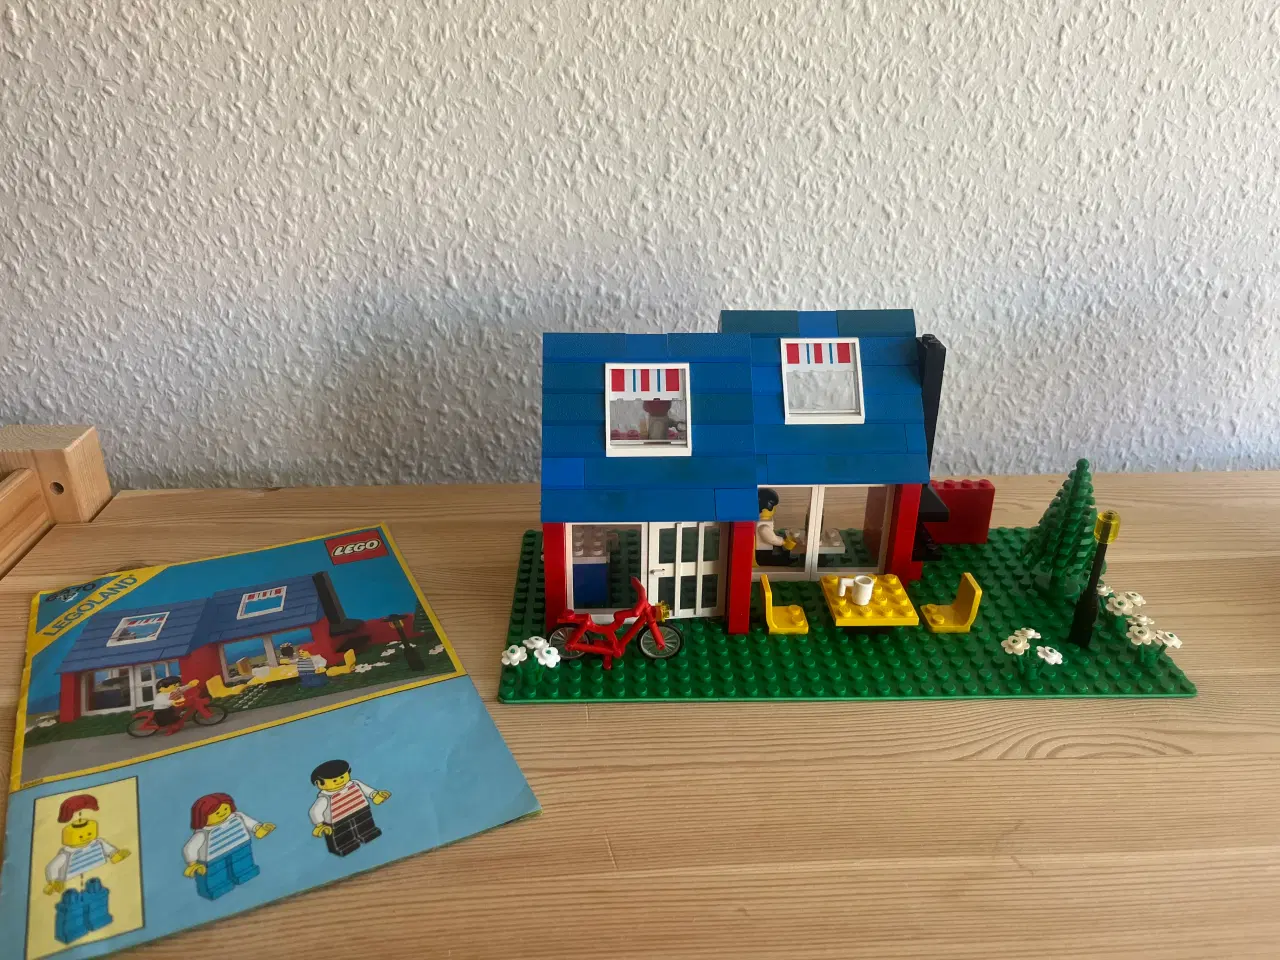 Billede 1 - Lego Weekend home, 6370 fra 1985